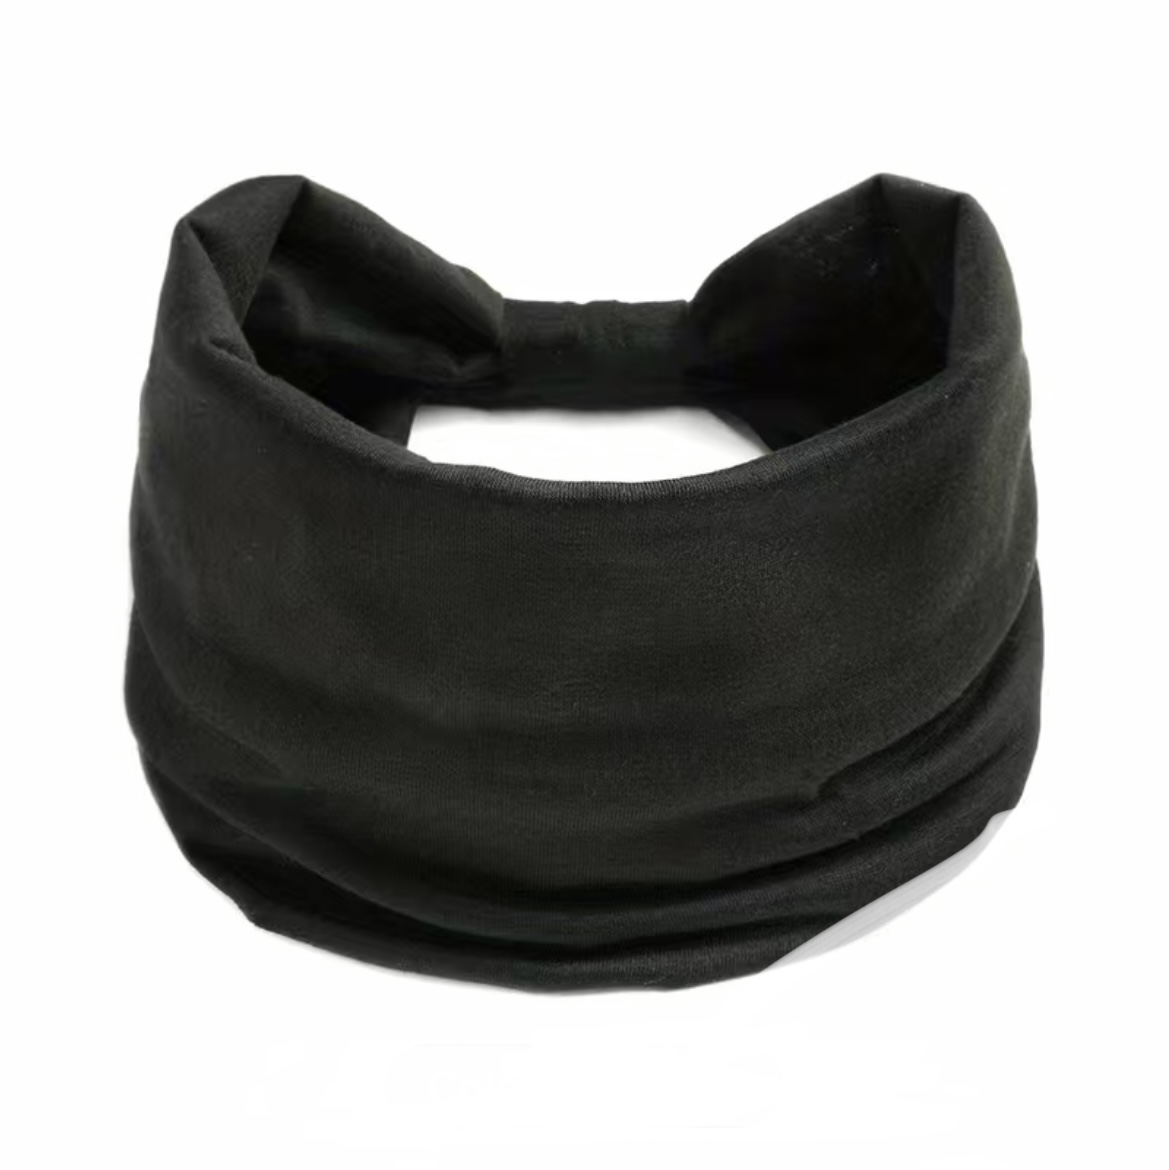 Multi function headband - black